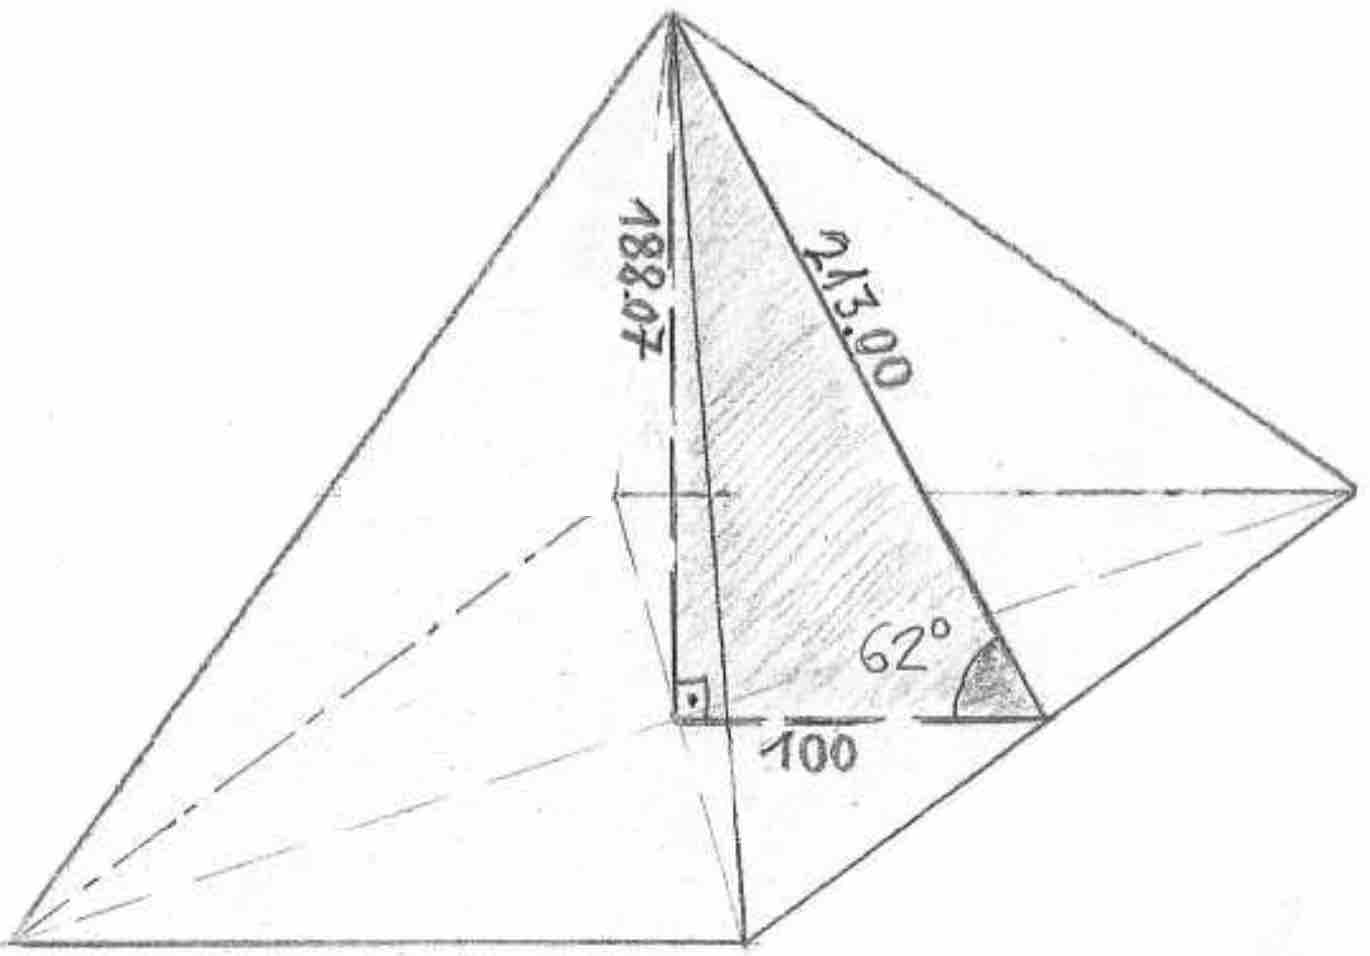 triángulo pitagórico casi exacto en la pirámide de 62 grados